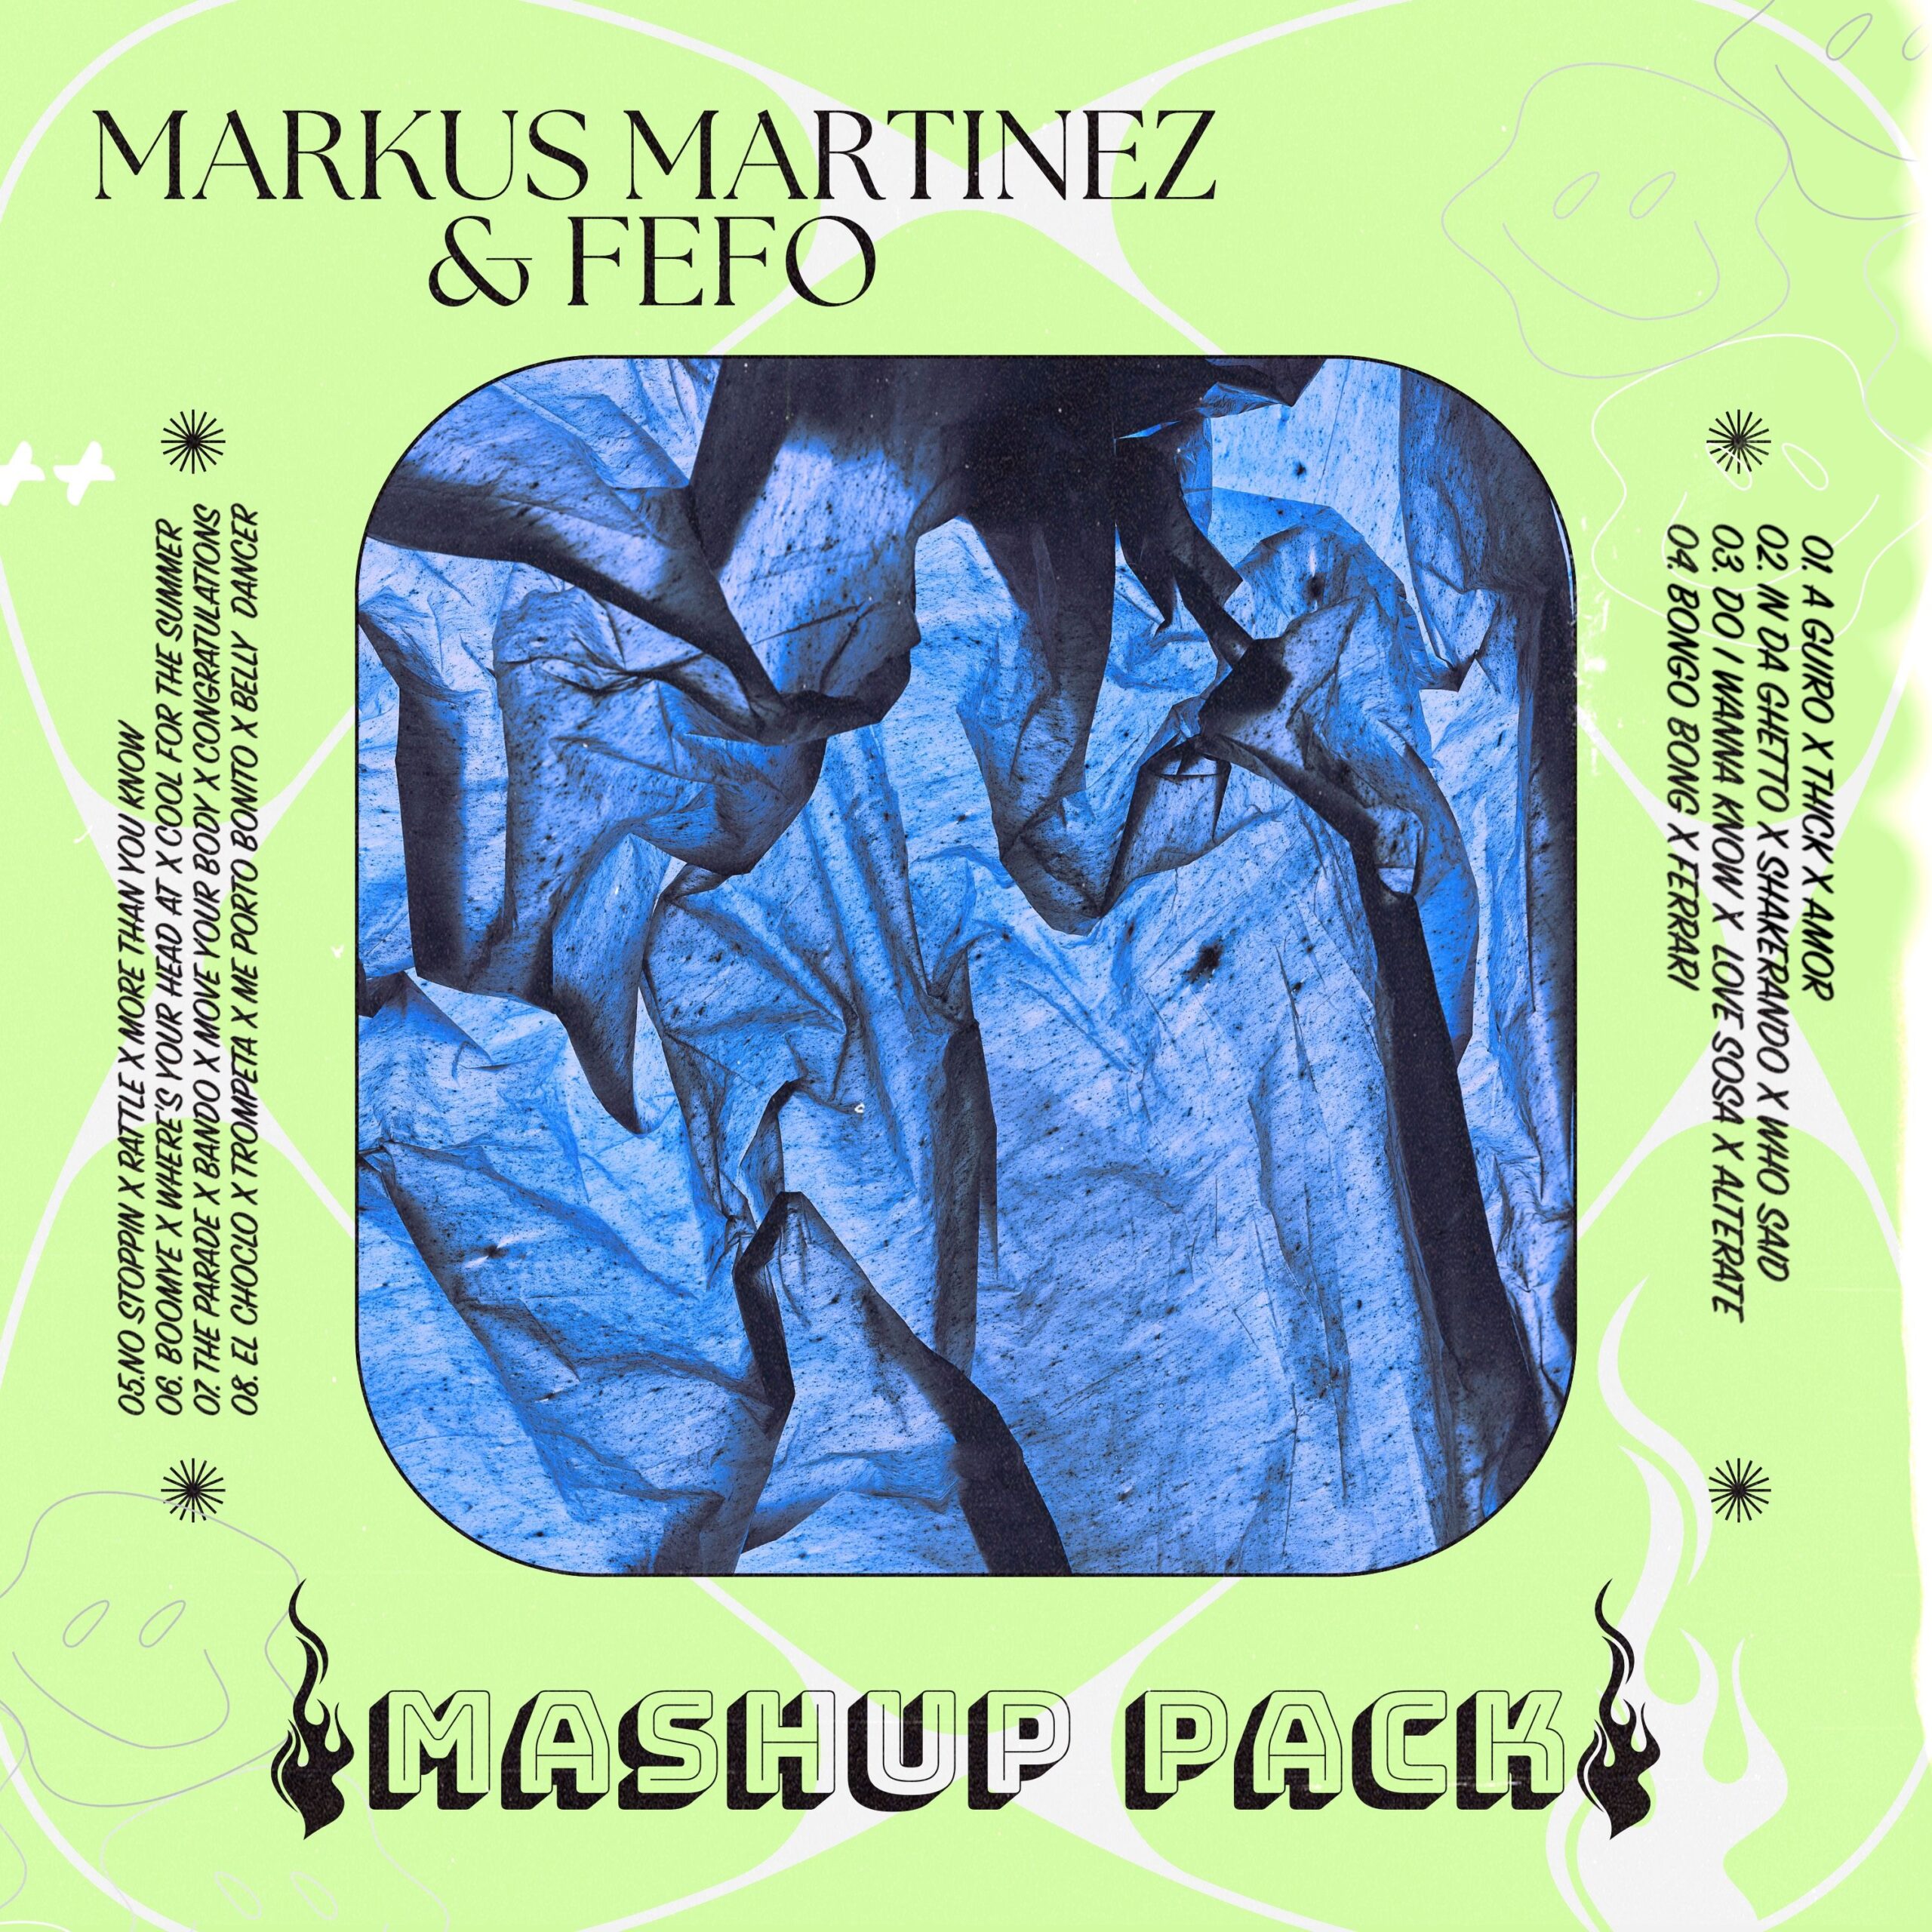 Markus Martinez & FEFO Mashup Pack